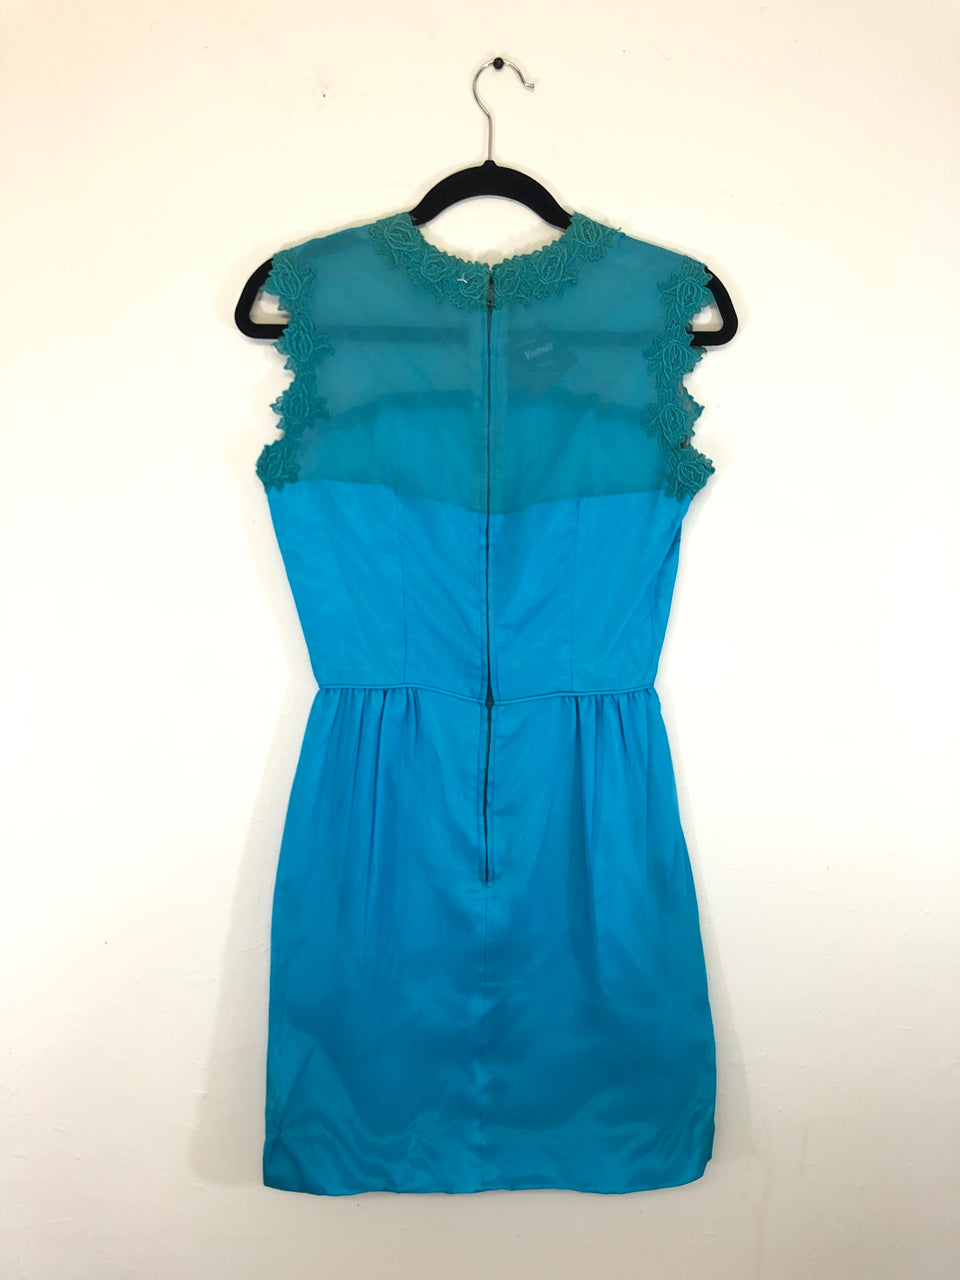 Turquoise Chiffon Dress